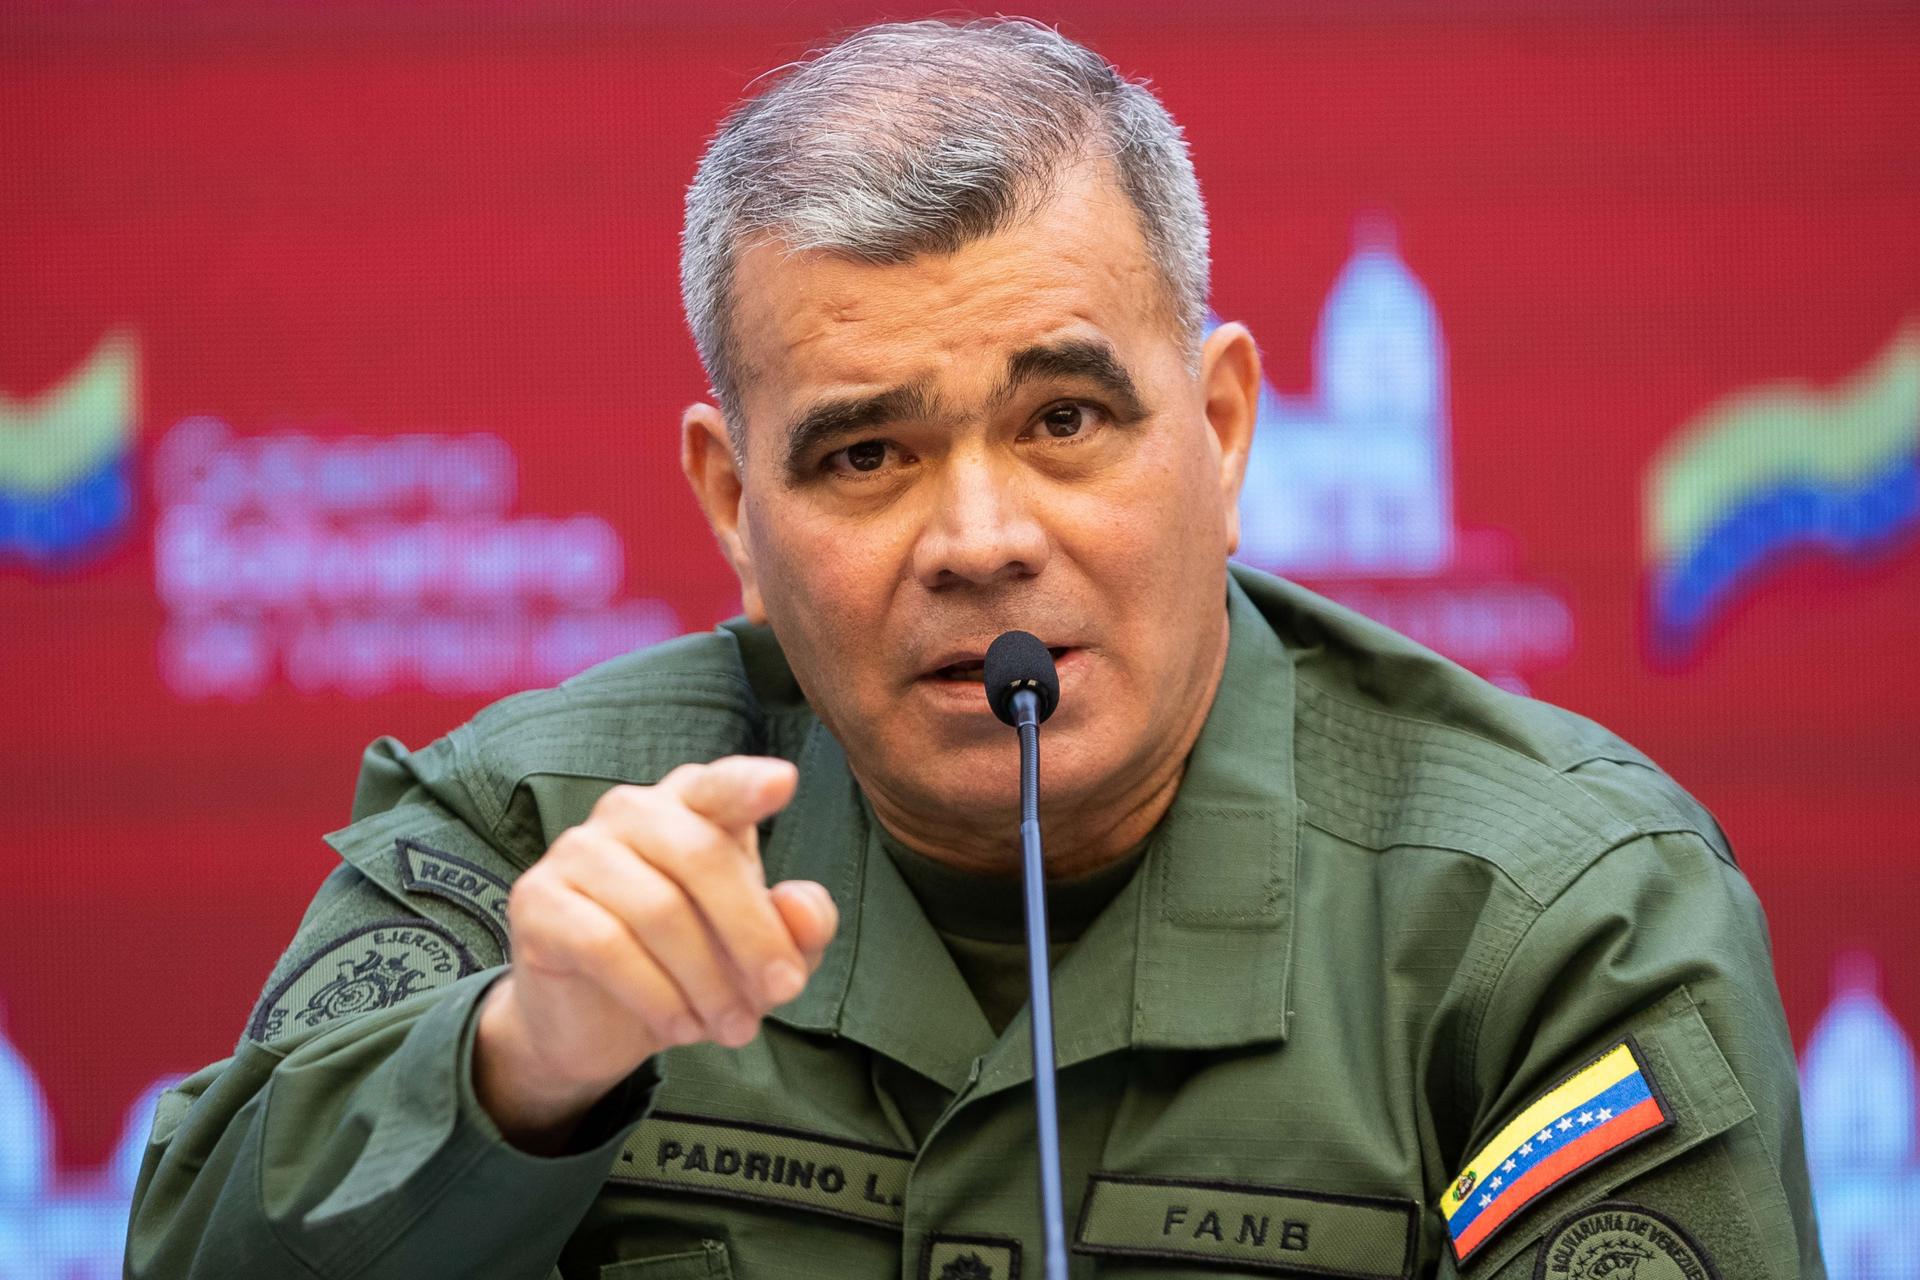 El ministro de Defensa de Venezuela, Vladimir Padrino López, en una fotografía de archivo. EFE/ Rayner Peña R.